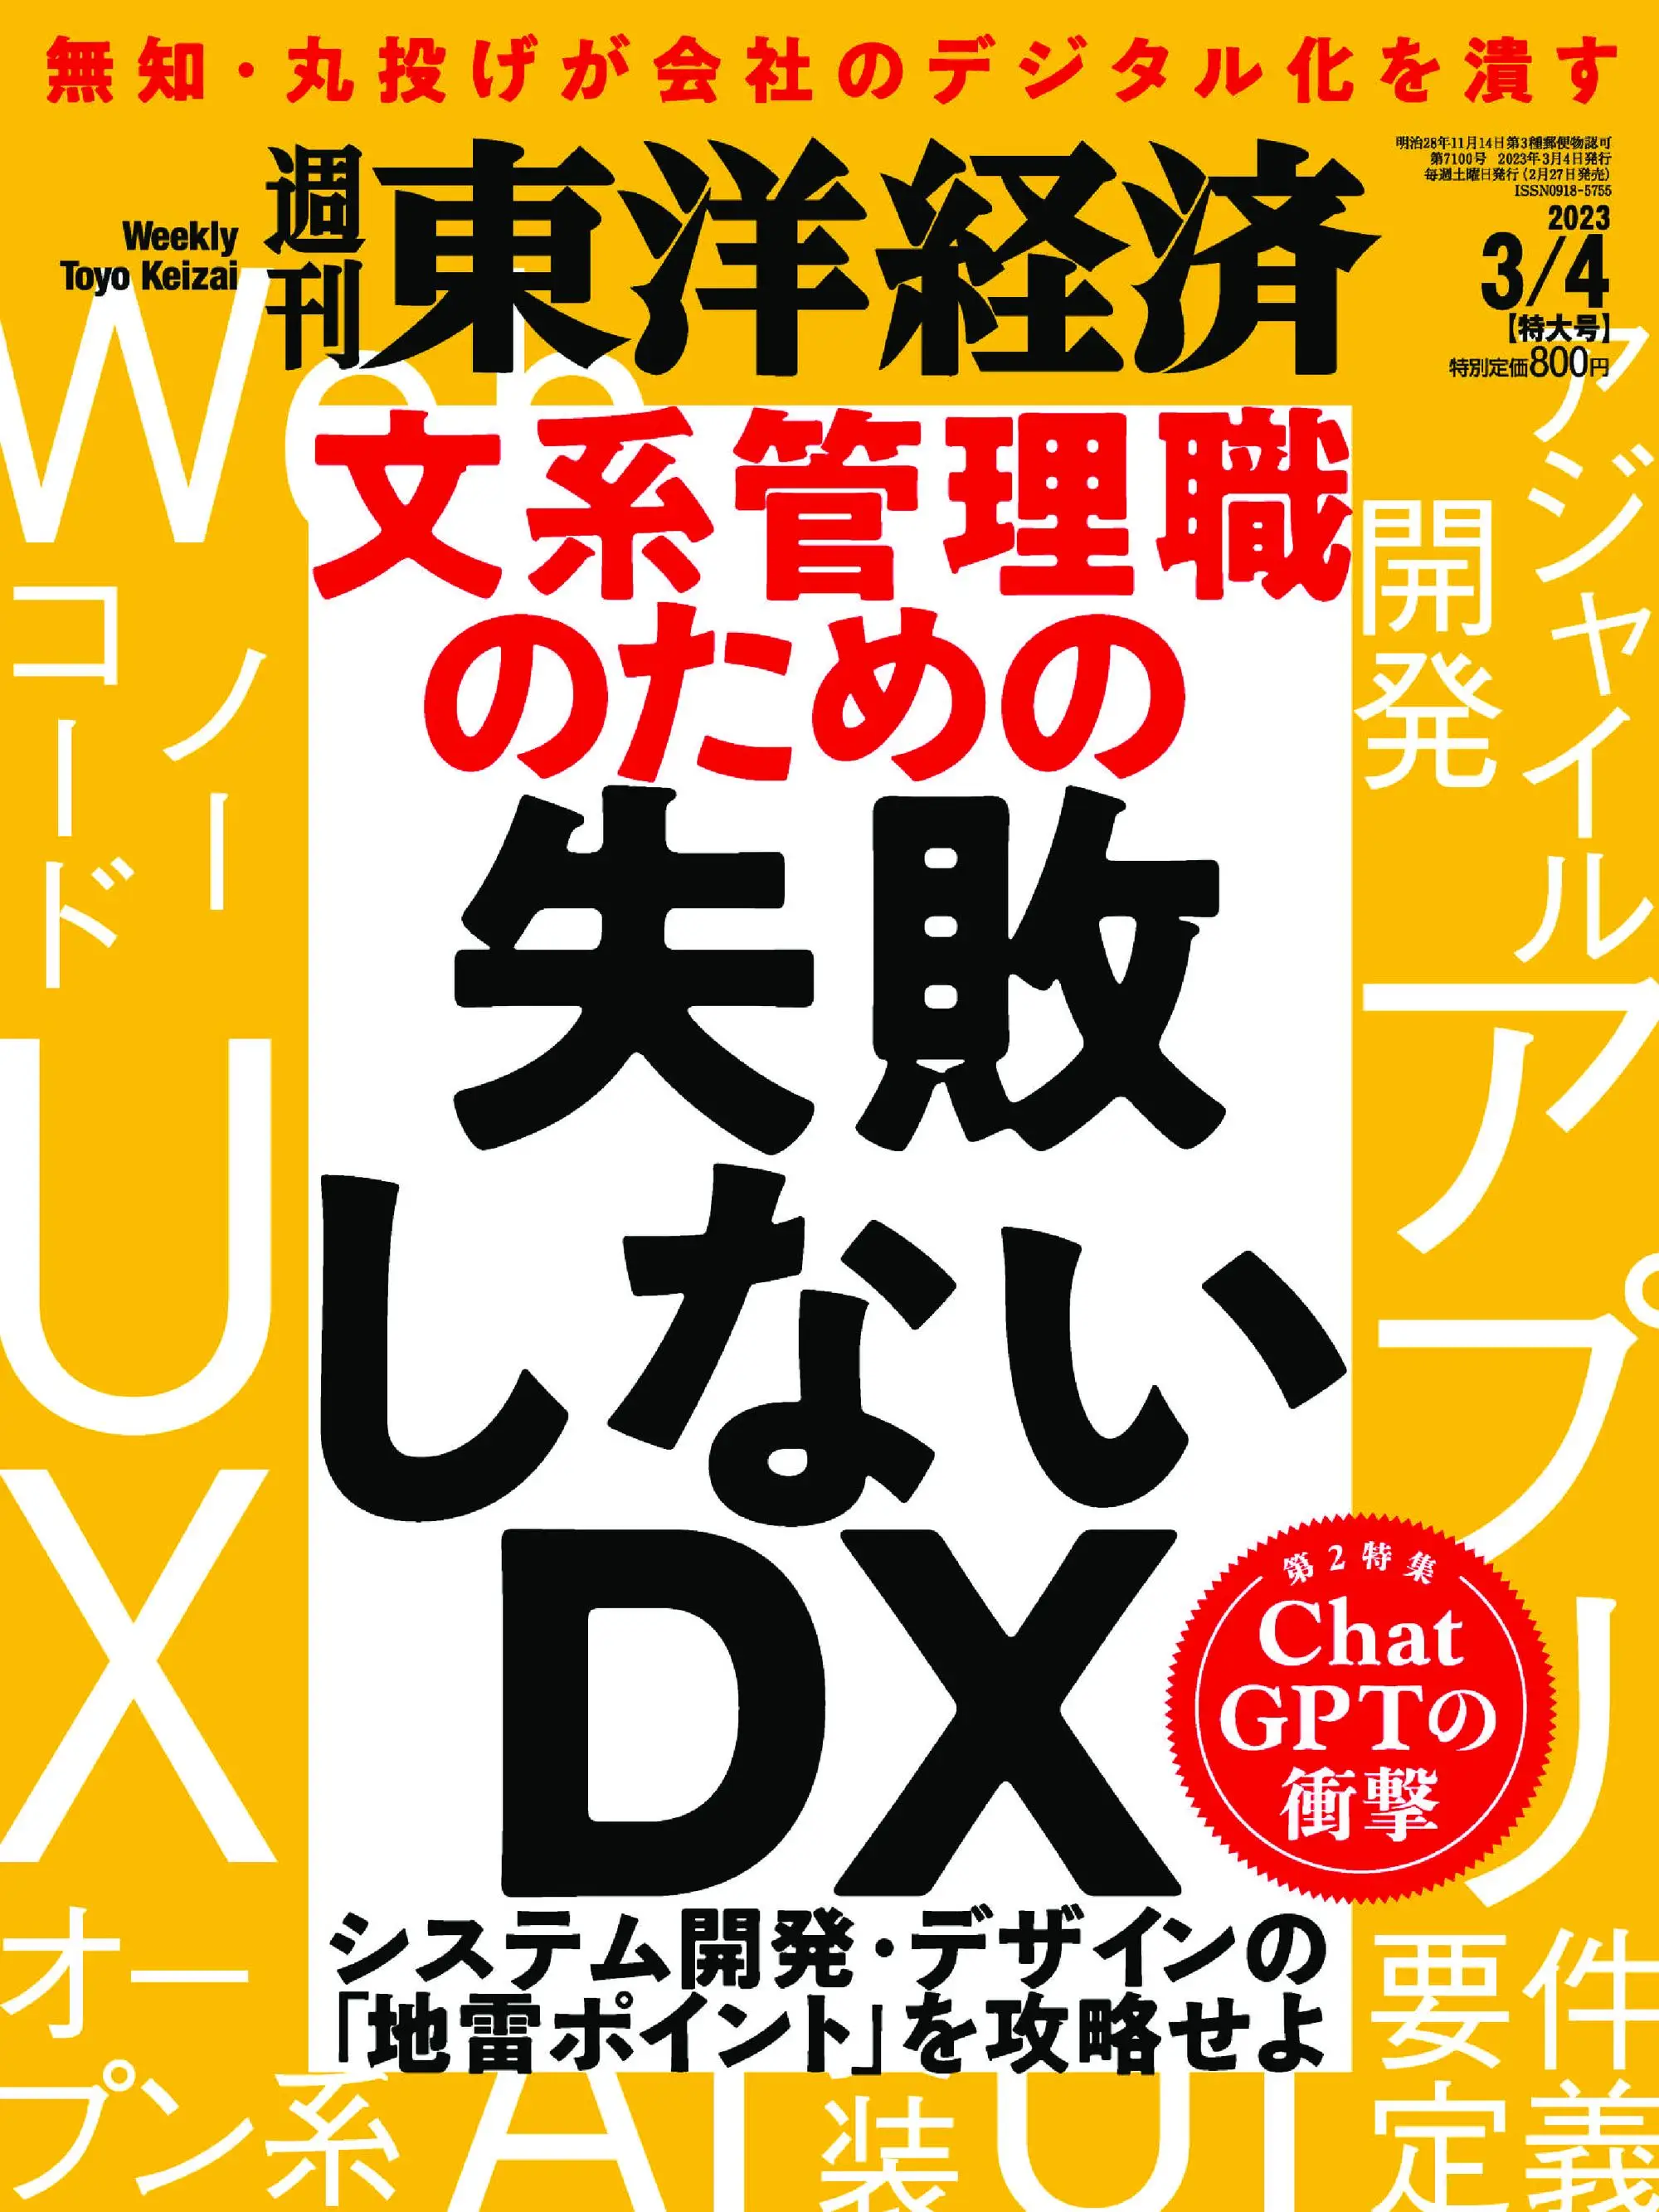 Weekly Toyo Keizai 週刊東洋経済 2023年2月27日 